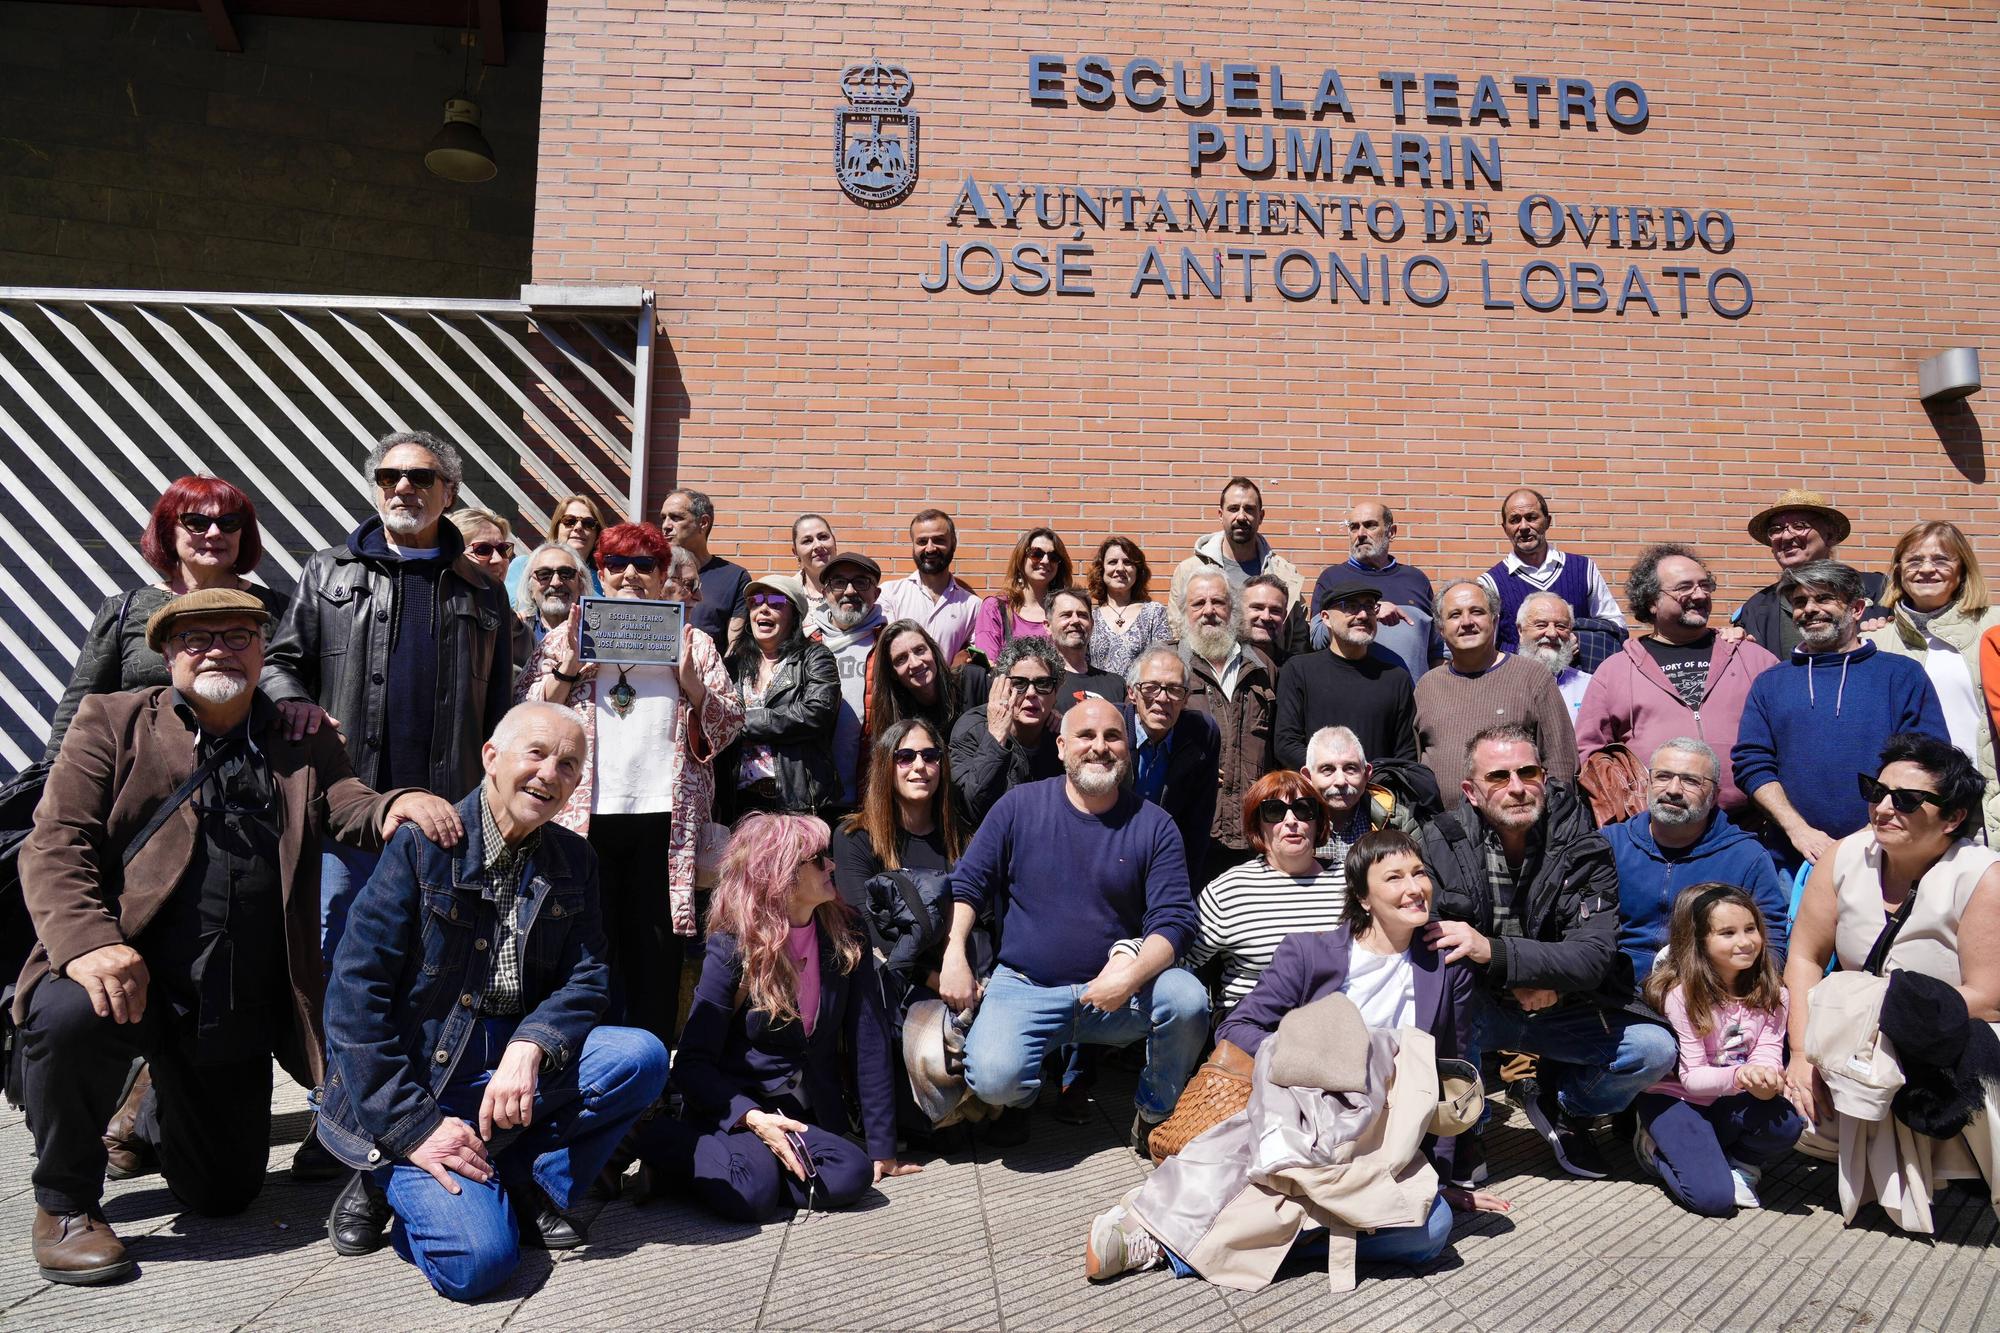 EN IMÁGENES: El actor asturiano José Antonio Lobato ya da nombre a la escuela-teatro de Pumarín en Oviedo